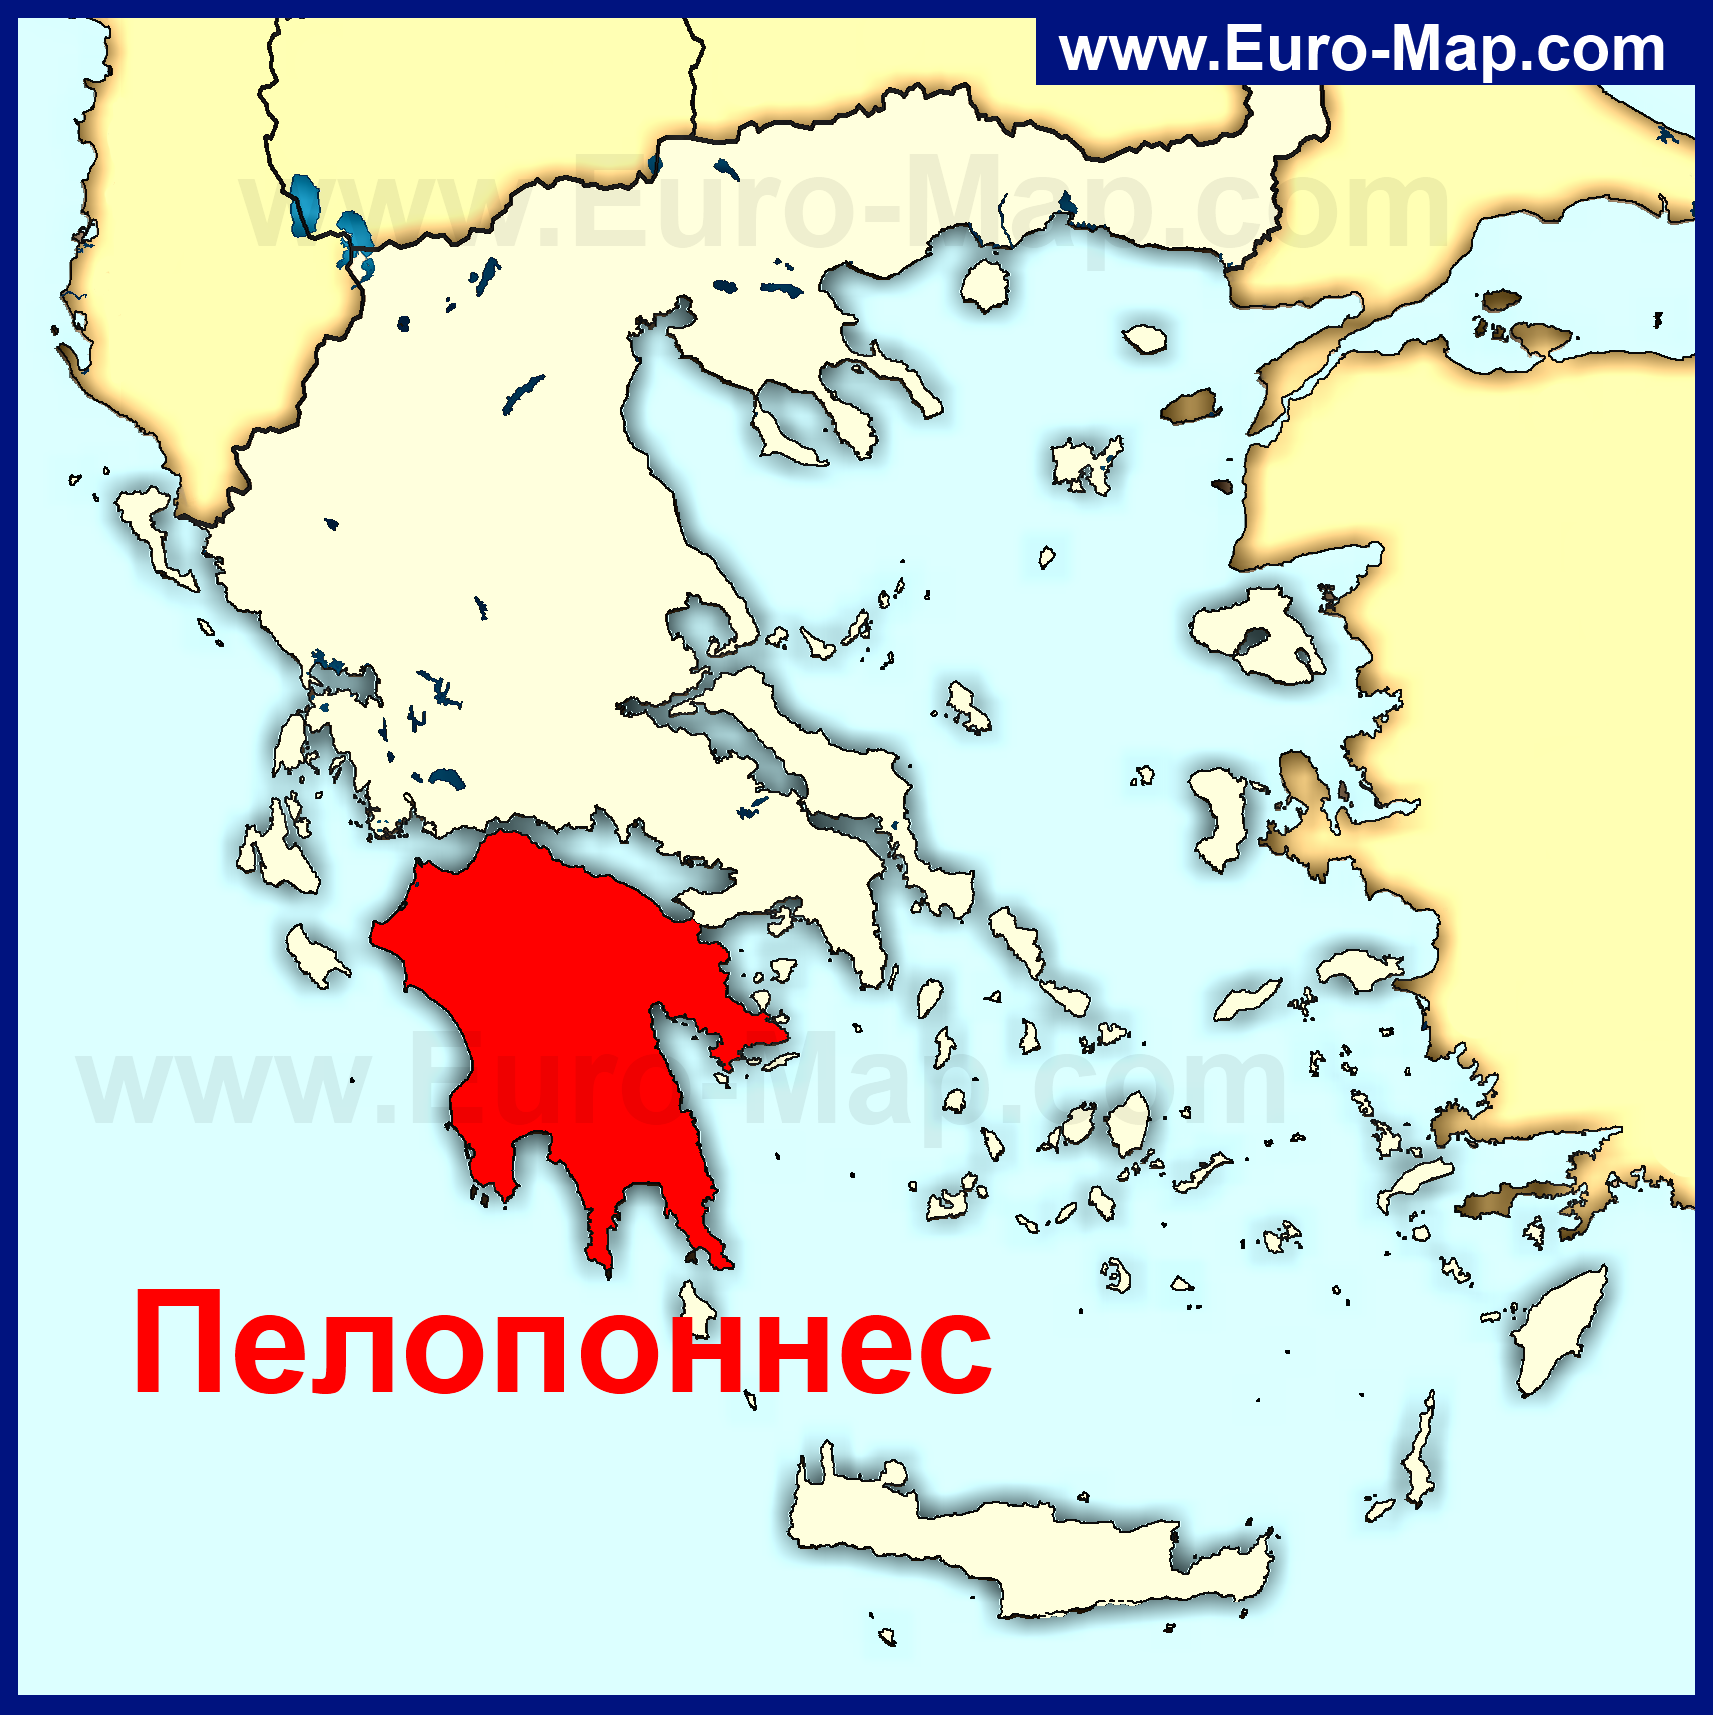 Полуостров пелопоннес на карте древней греции дрель ловеч болгария